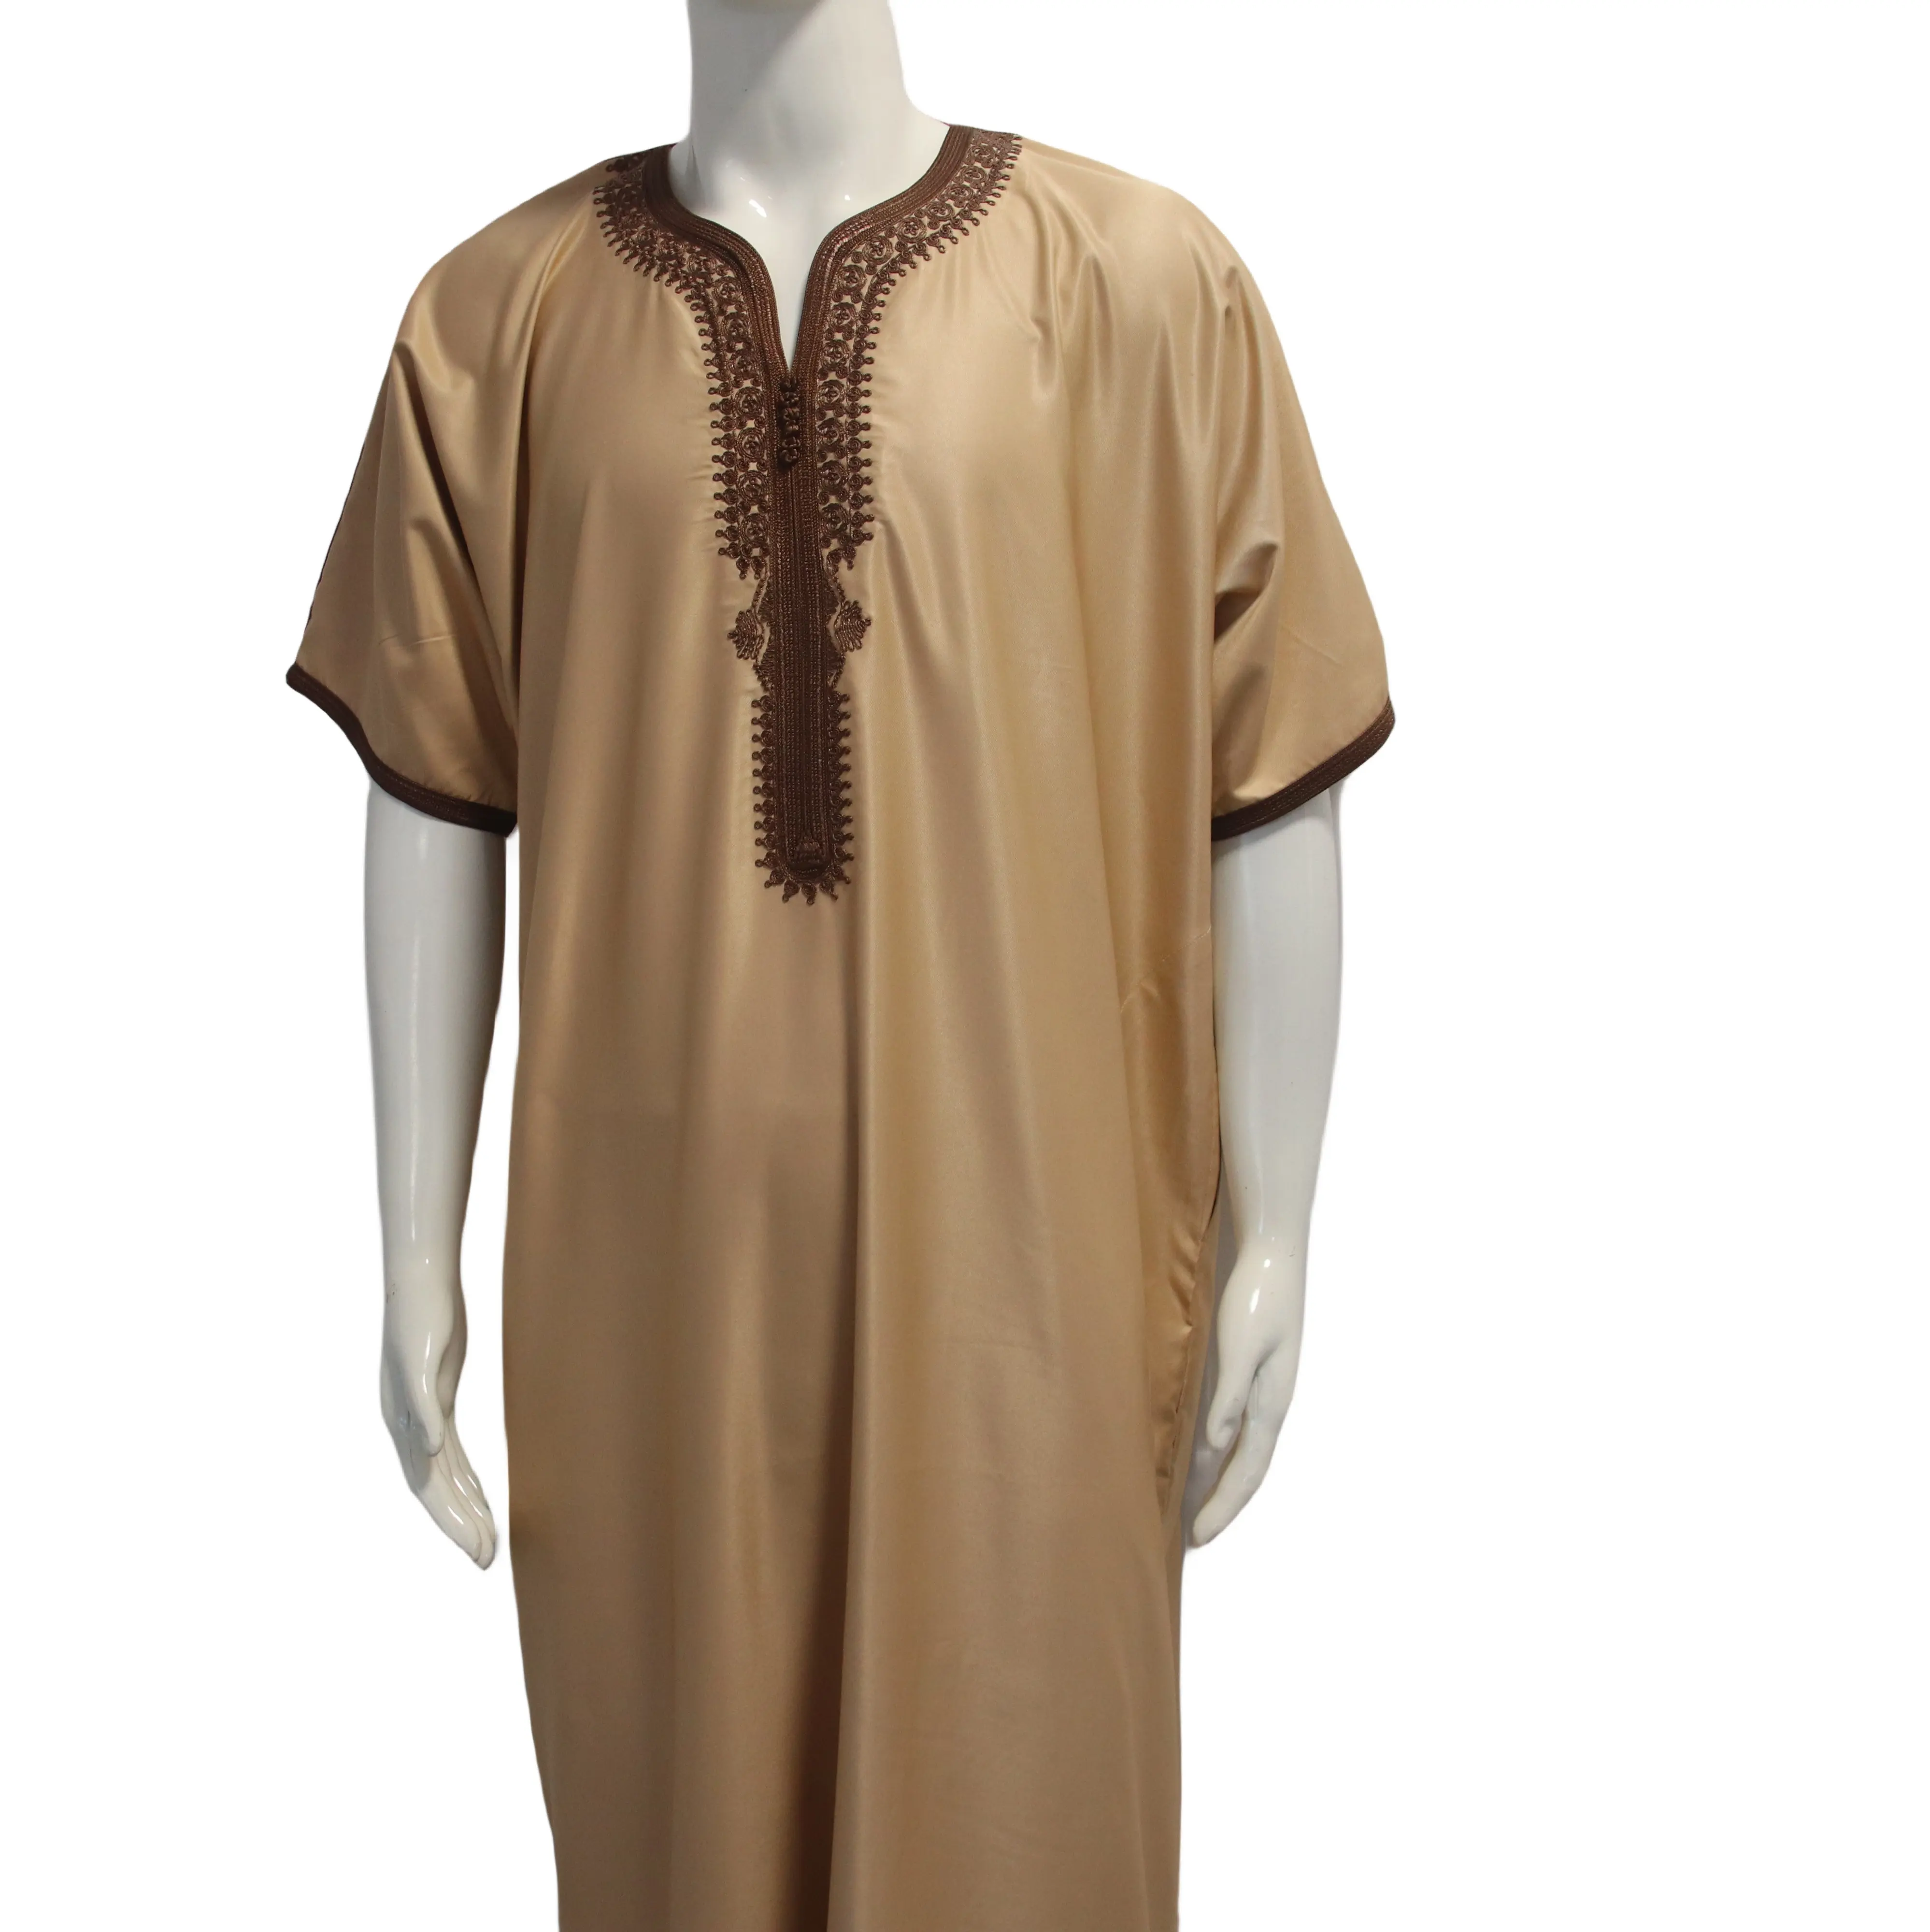 Islamische hochwertige ethnische Kleidung Arabische Seide V-Ausschnitt Robe muslimische Männer Thobe